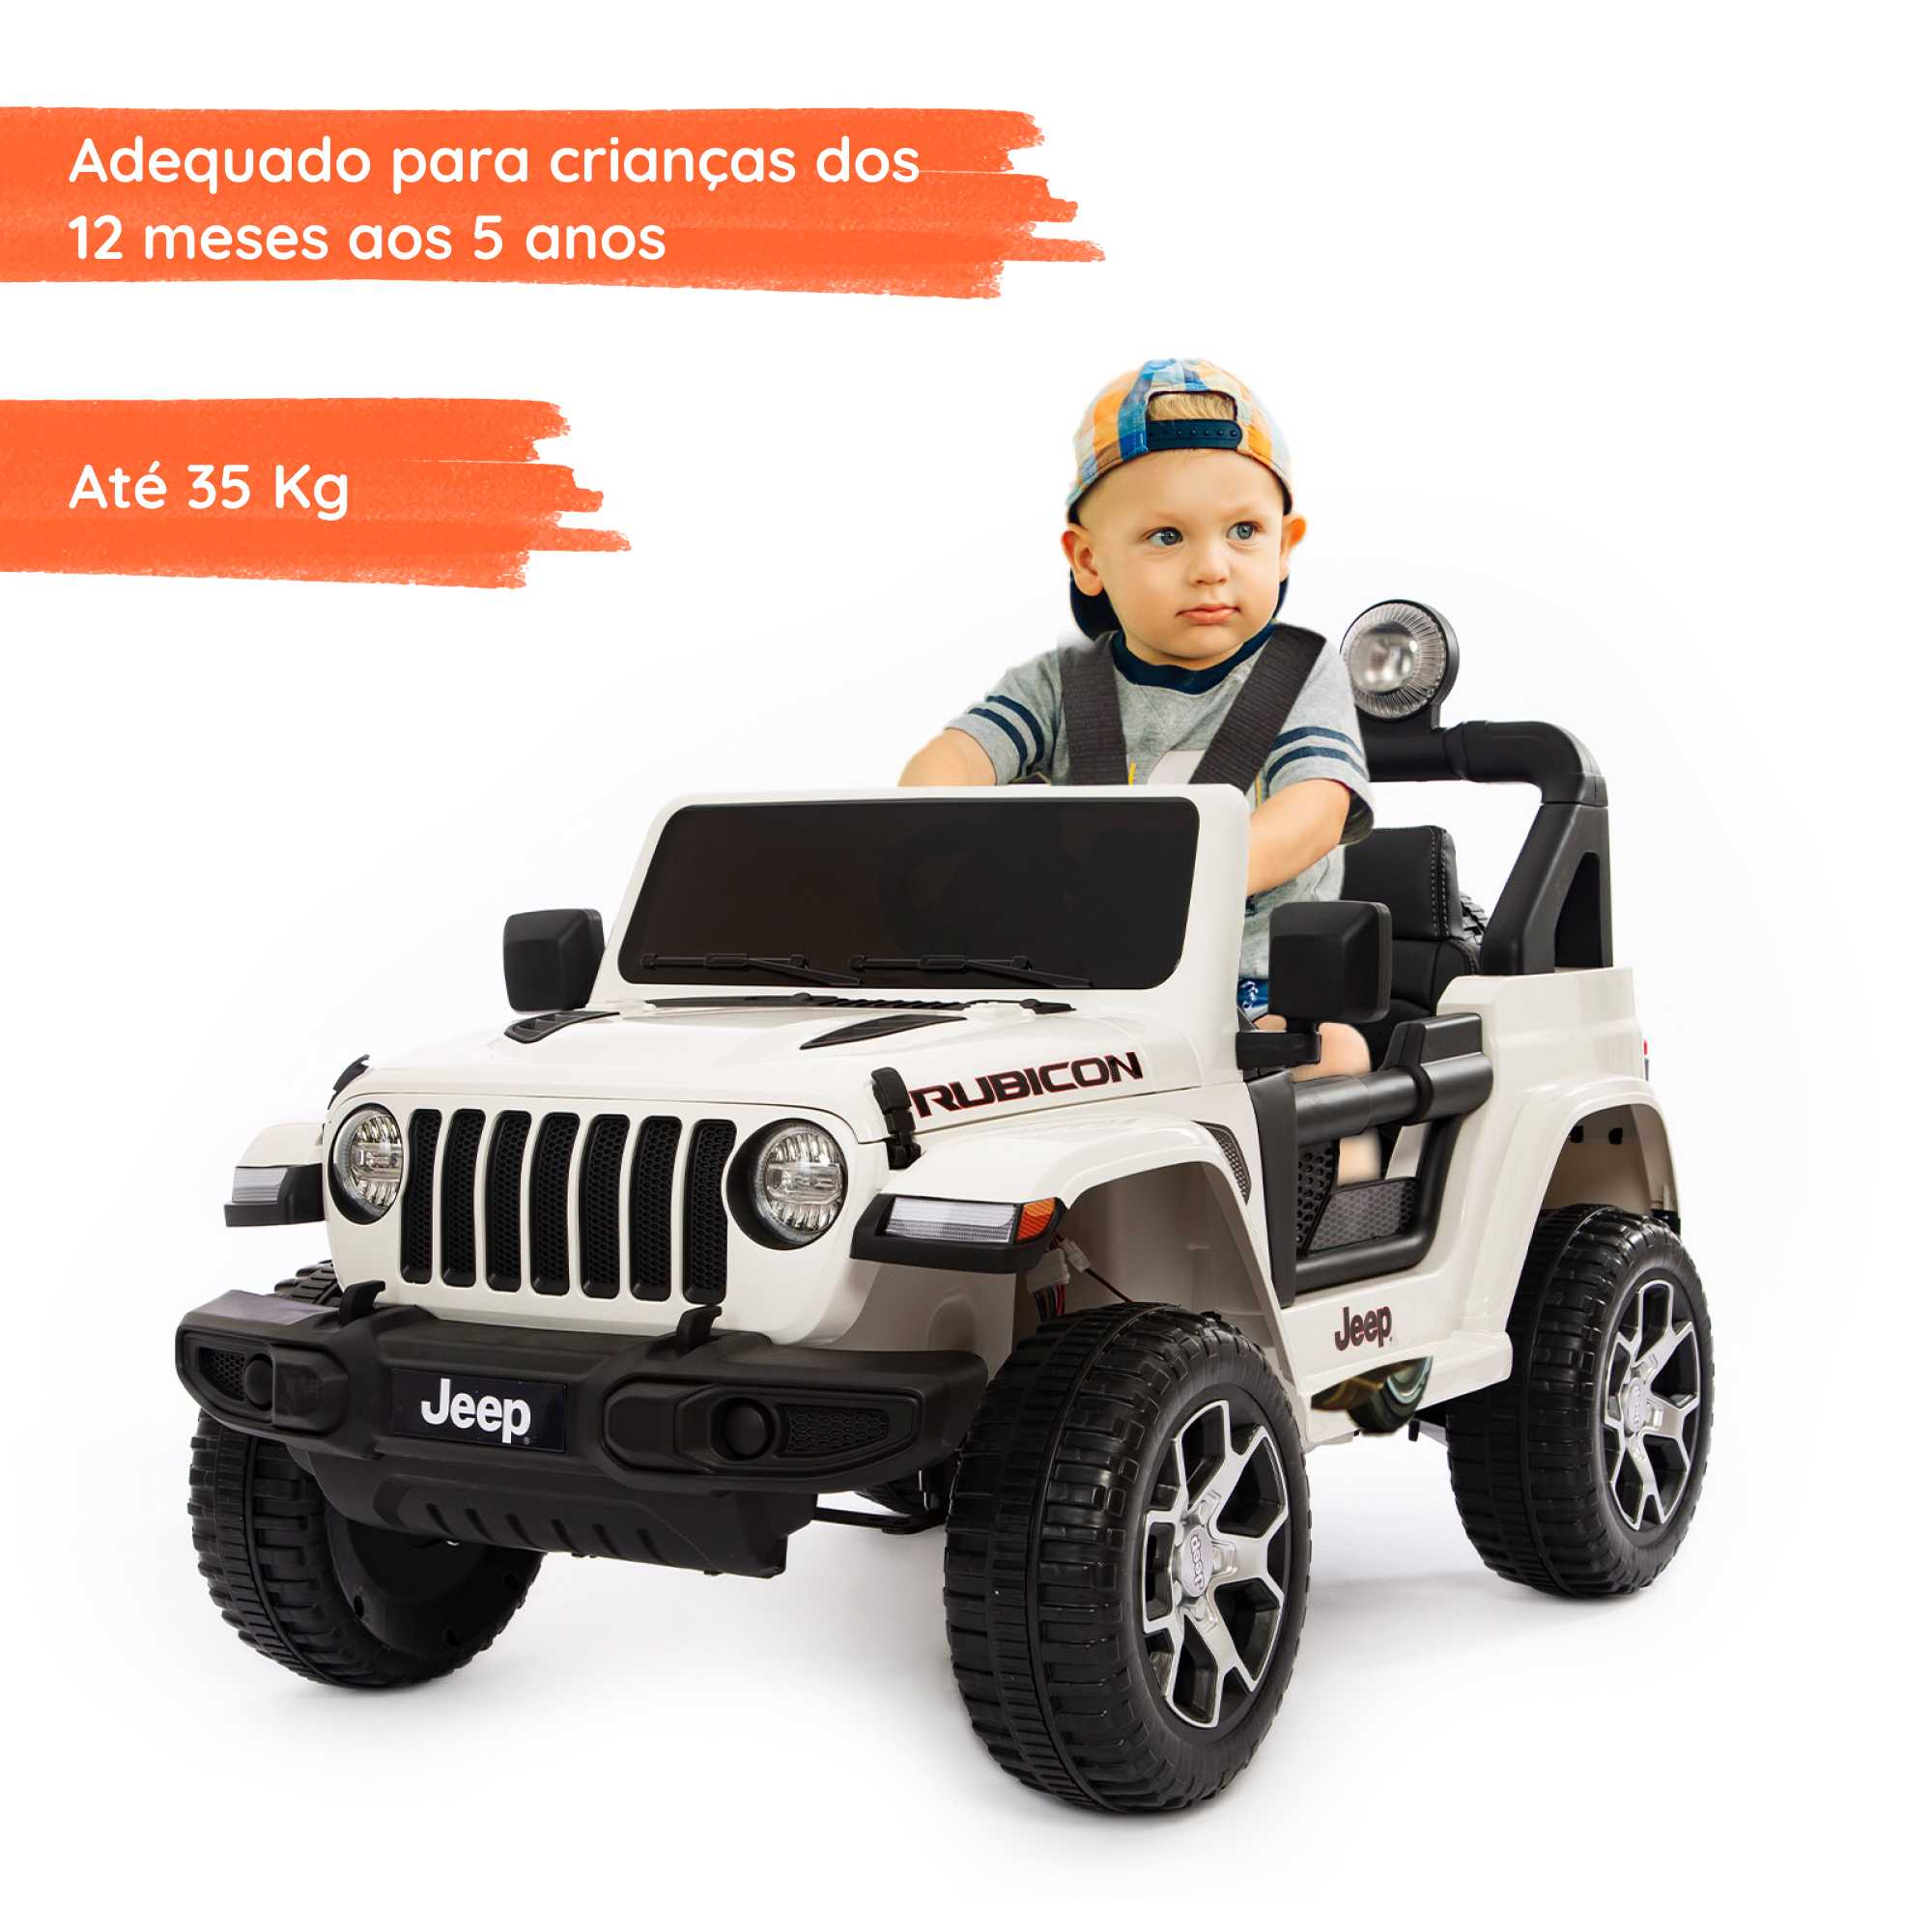 Jeep Wrangler Rubicon elétrico para crianças com criança